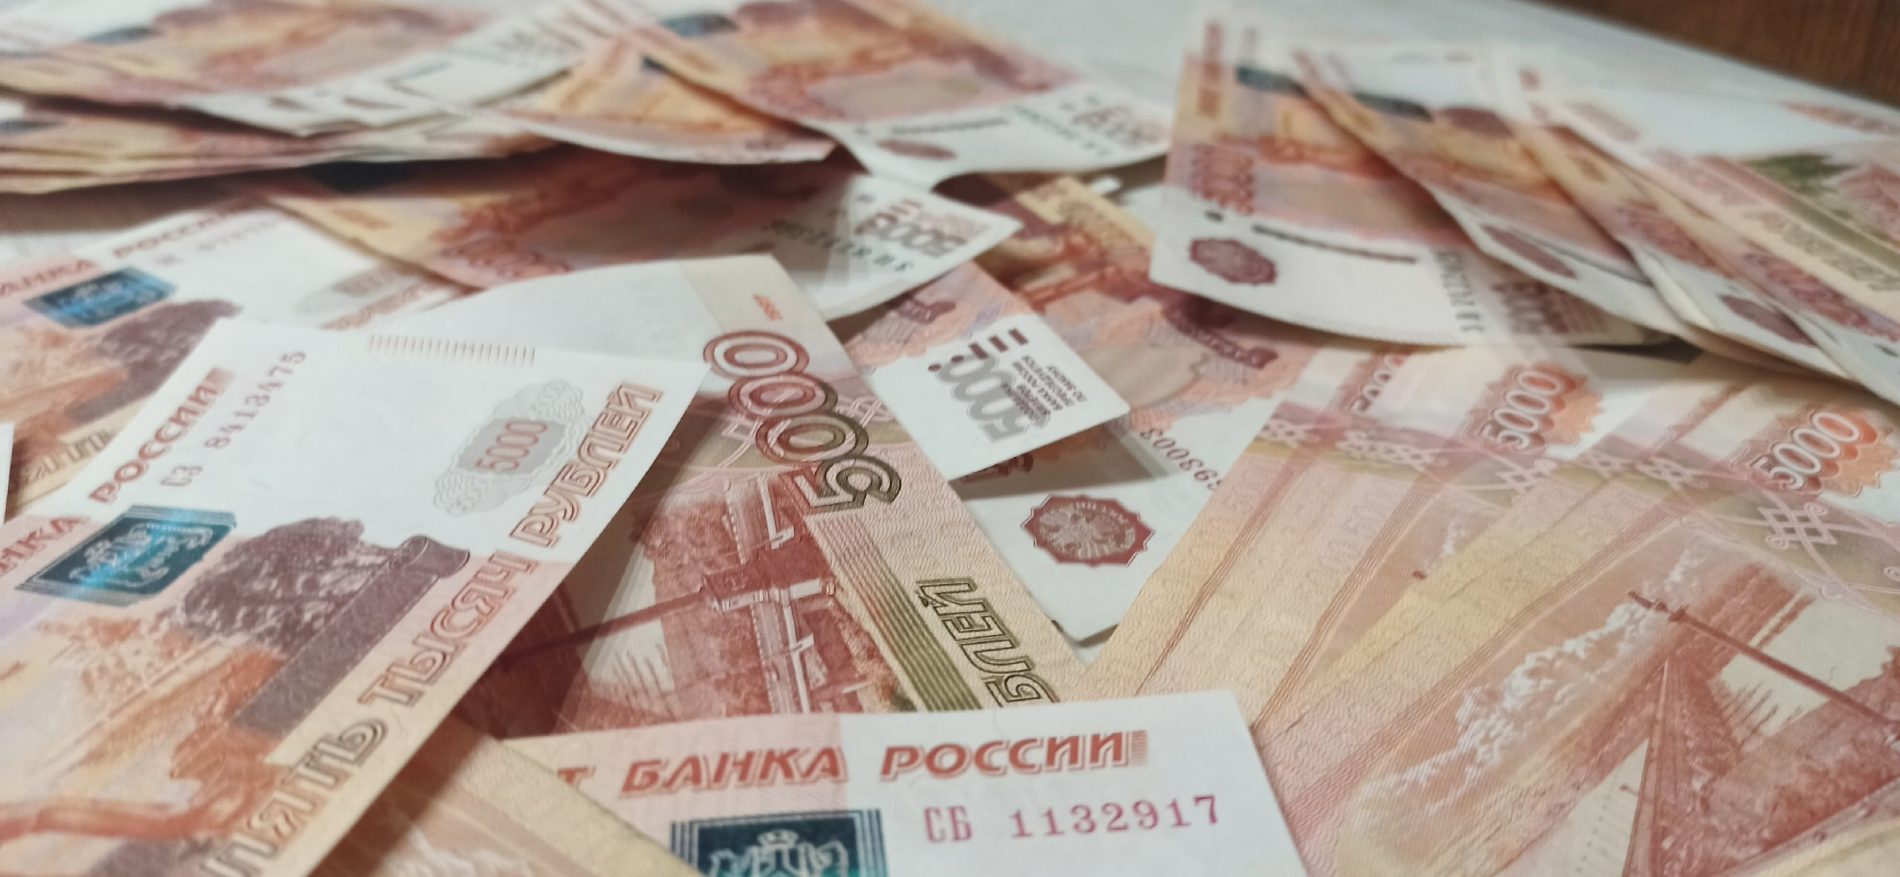 Вместо дополнительного заработка костромичка отдала мошенникам 200 тысяч рублей